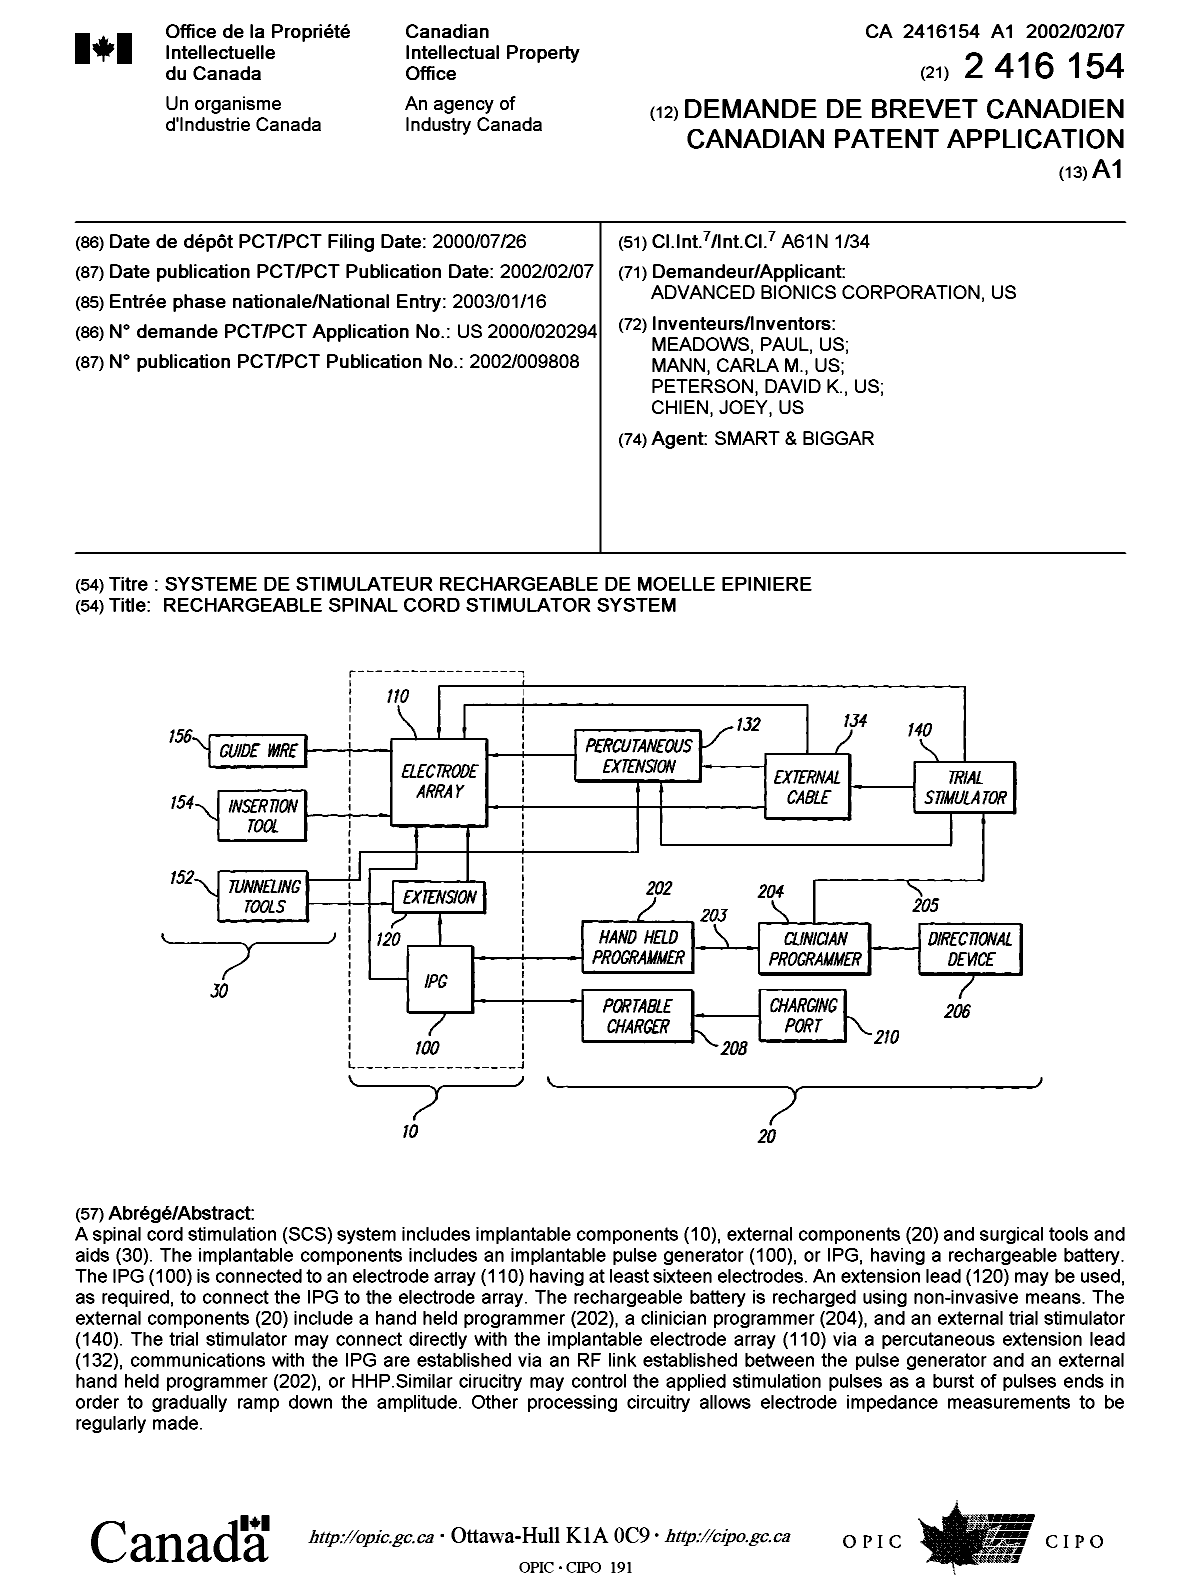 Document de brevet canadien 2416154. Page couverture 20030313. Image 1 de 1